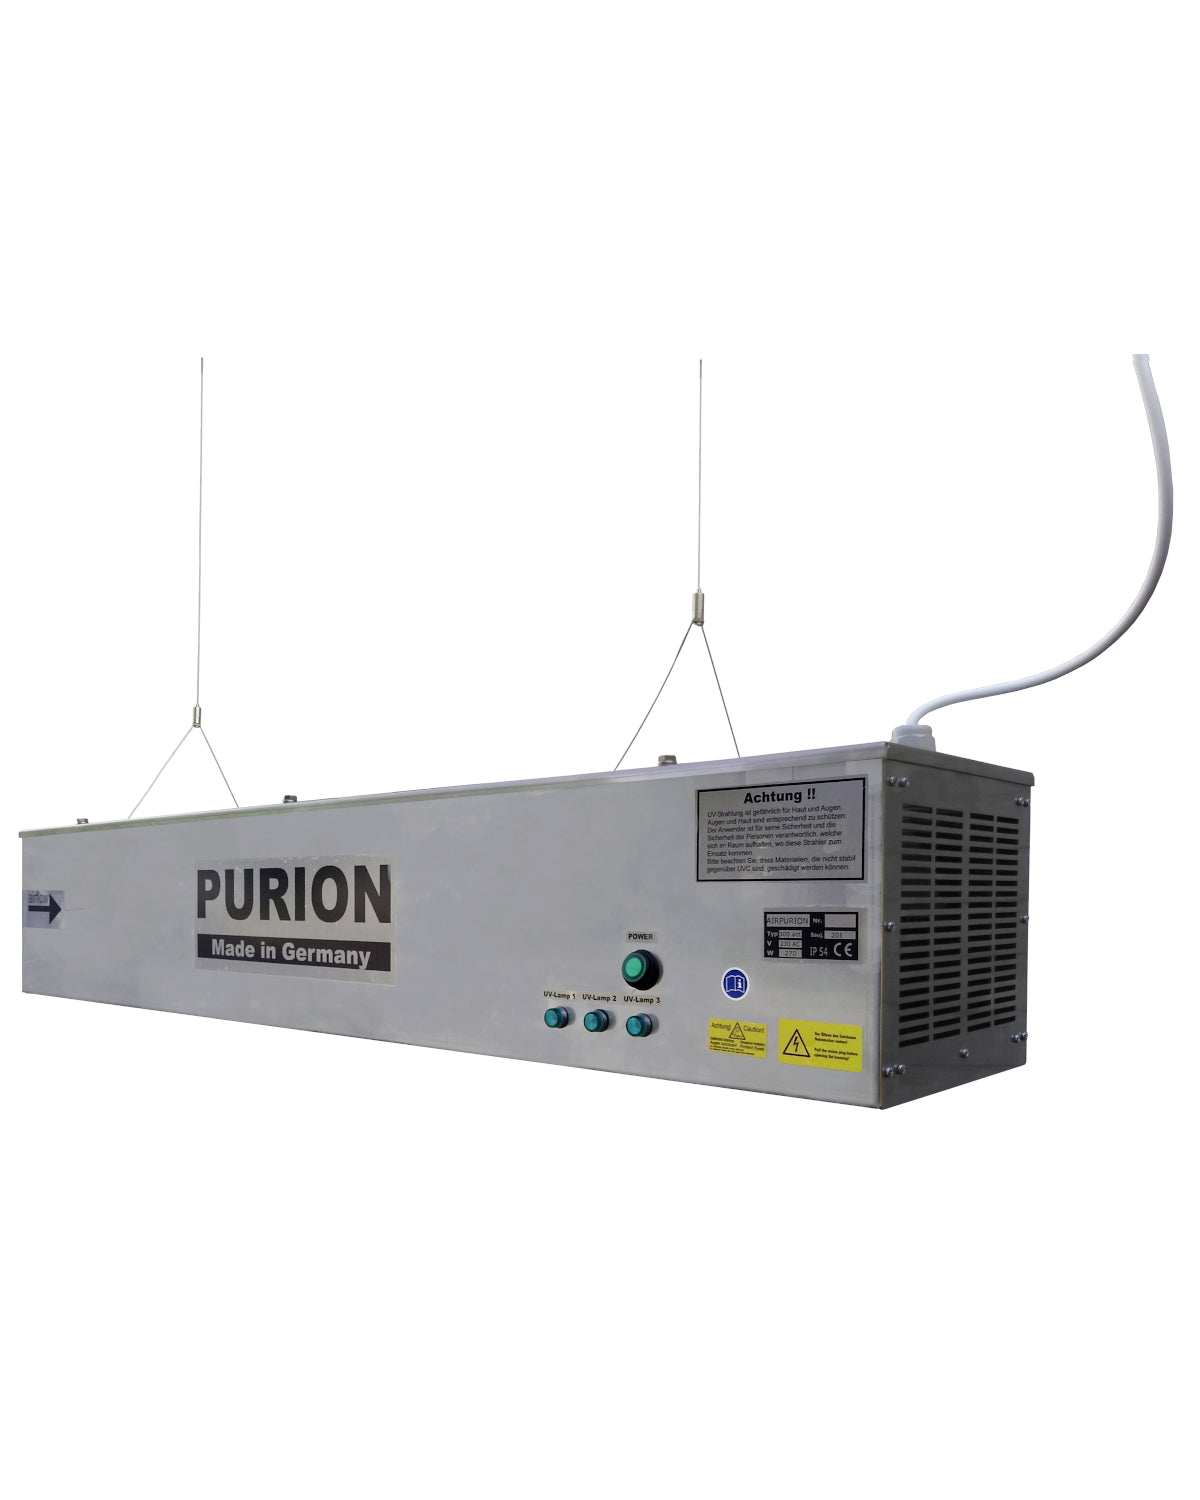 Der Purion-Ionisator ist ein leistungsstarkes Luftreinigungssystem, das fortschrittliche Technologie nutzt, um schädliche Partikel effektiv zu entfernen und die Luftqualität zu verbessern. Mit seiner AIRPURION 300 Active Silent Basic-Funktion ist dieser Ionisator der PURION GmbH.